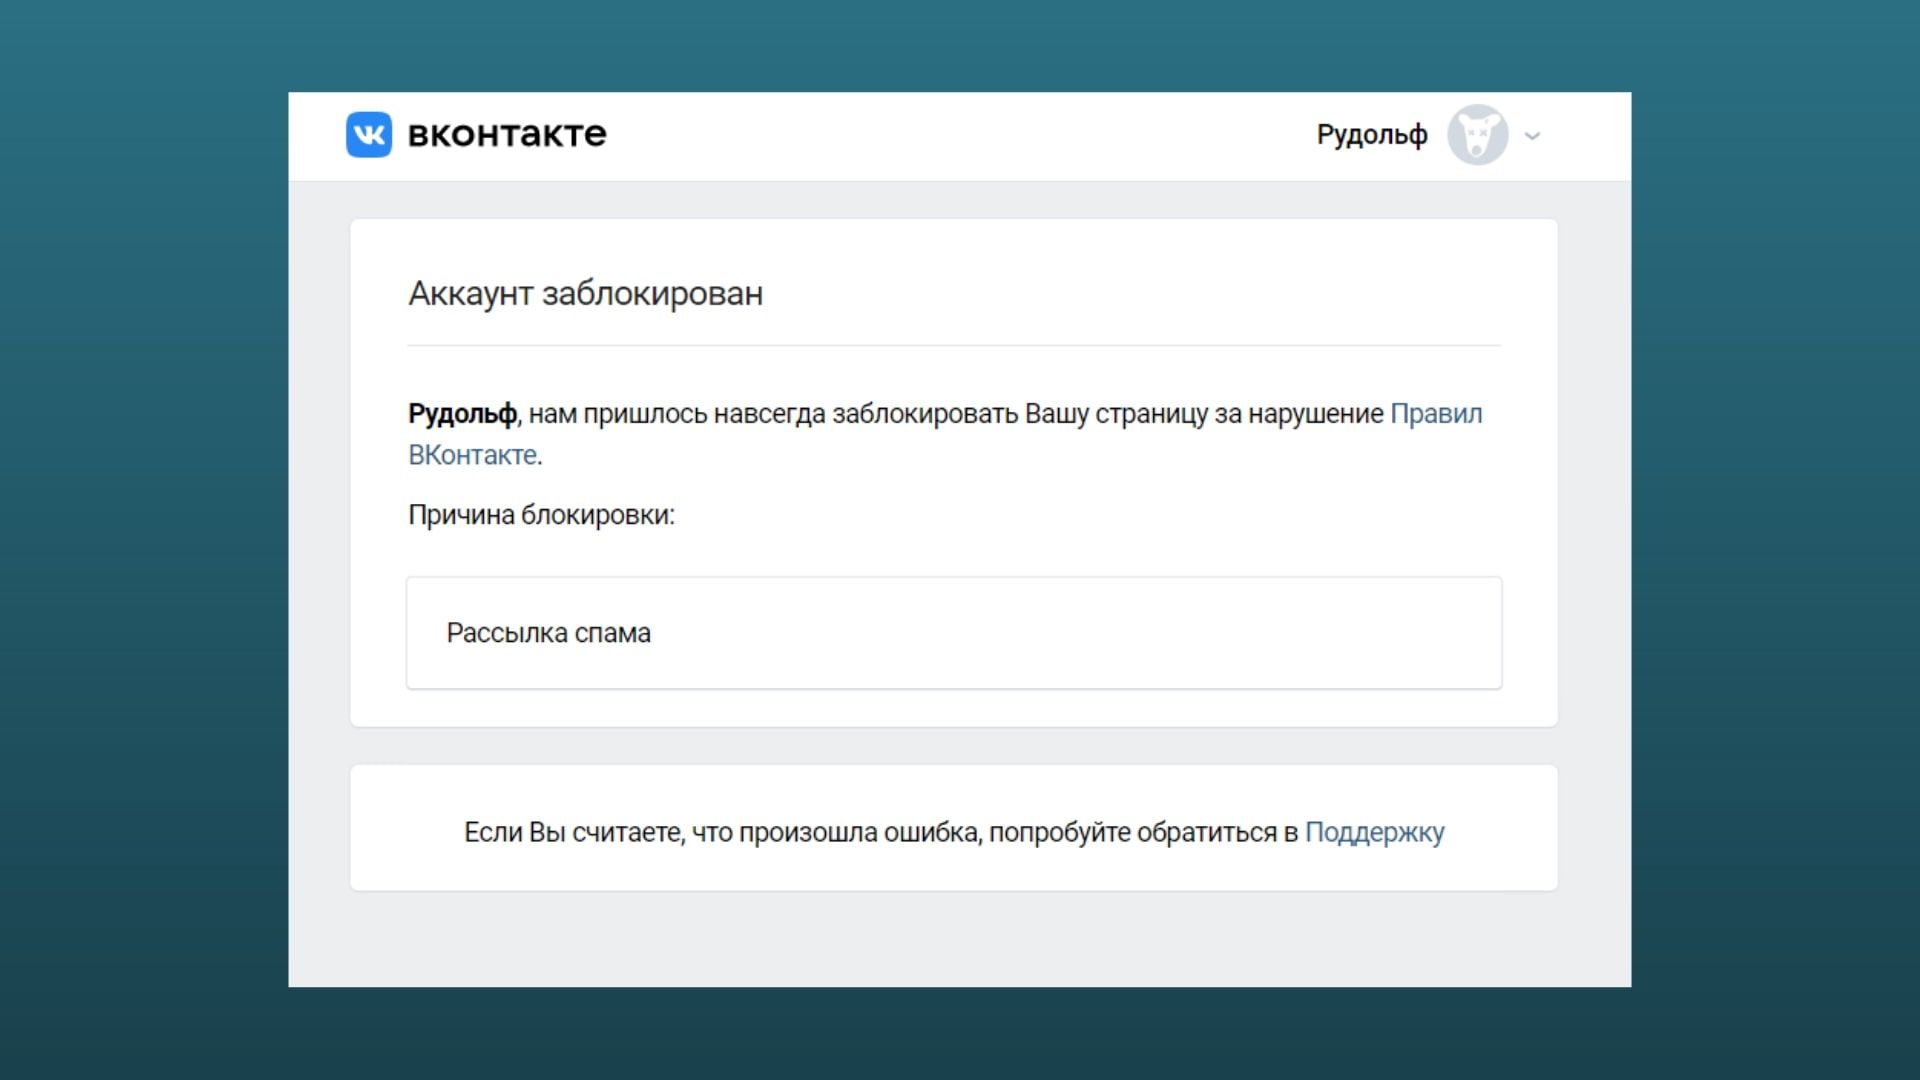 Как восстановить страницу в Контакте при утере доступа удалении или блокировке